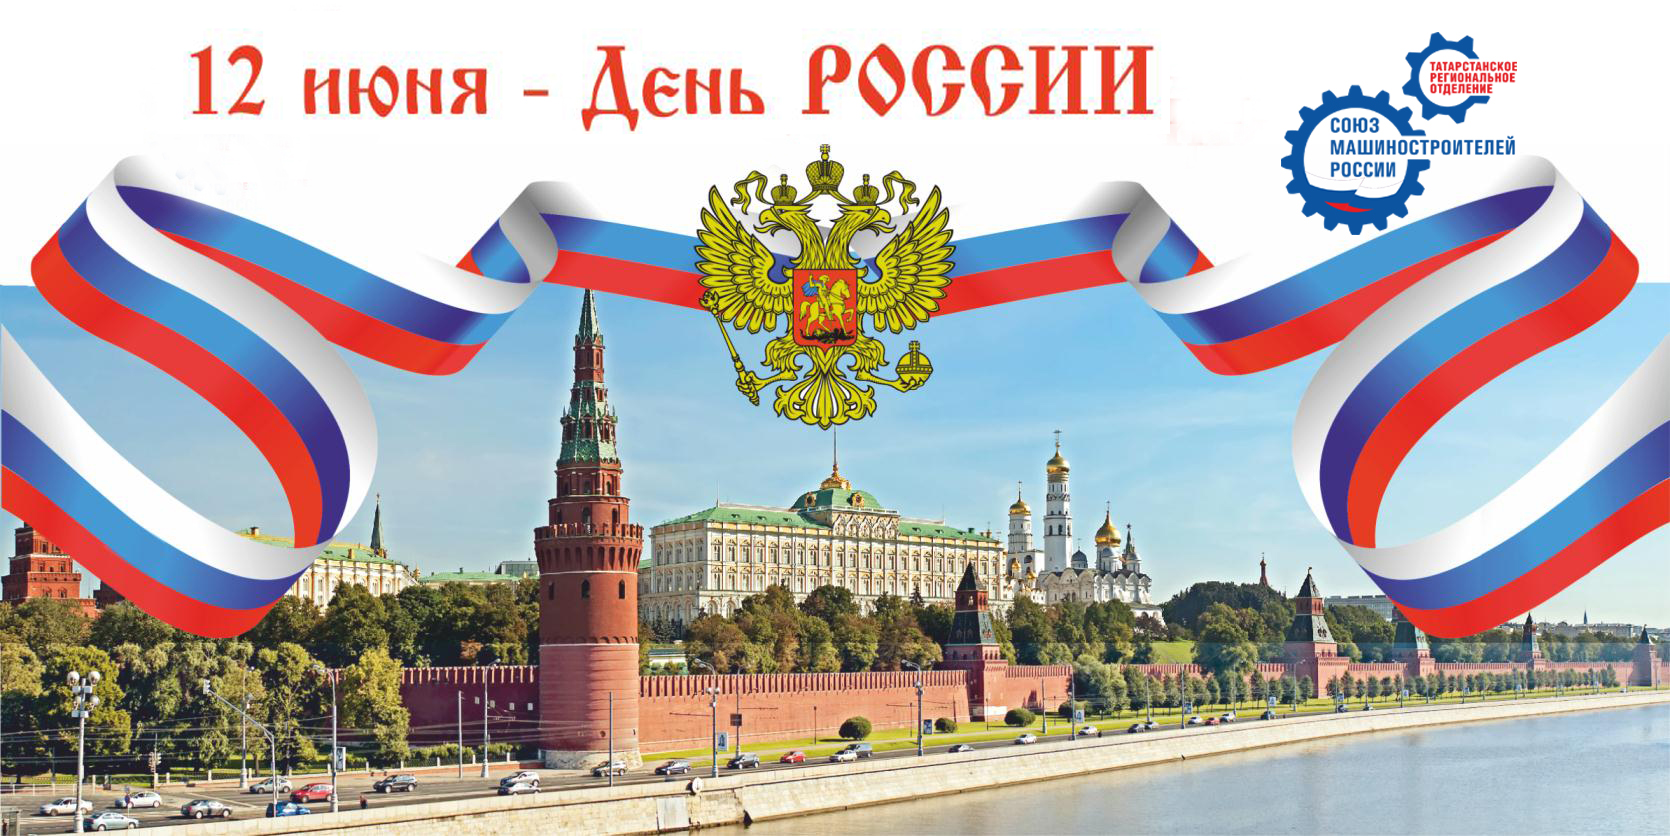 Поздравление Председателя Татарстанского РО Союза машиностроителей России с Днем России! 